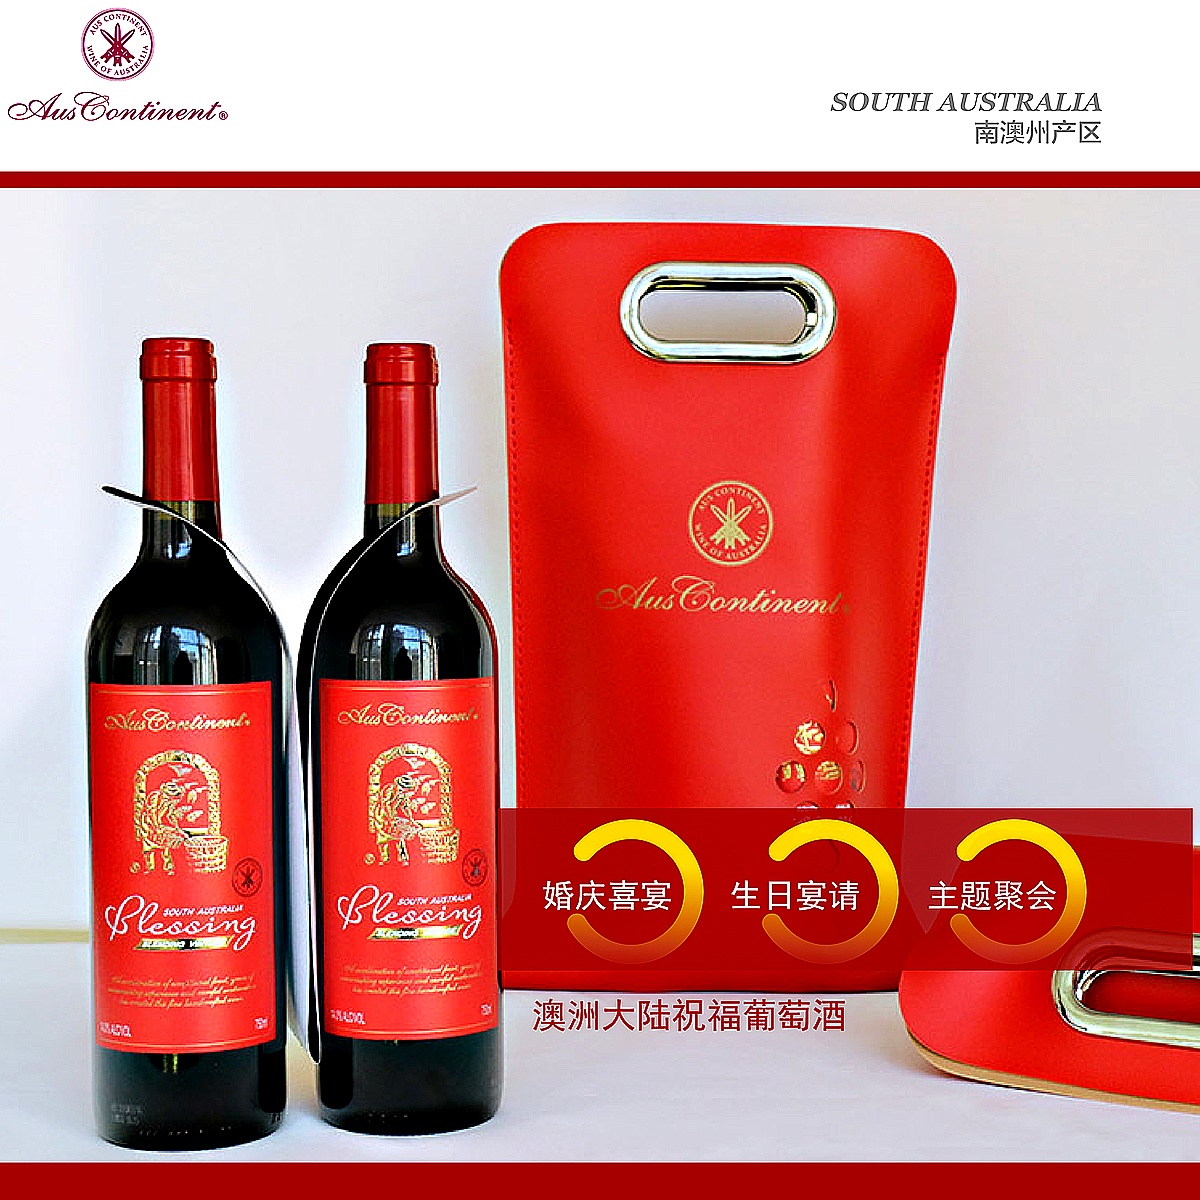 澳大利亚南澳产区澳洲大陆酒庄混酿BLESSING干红葡萄酒红酒